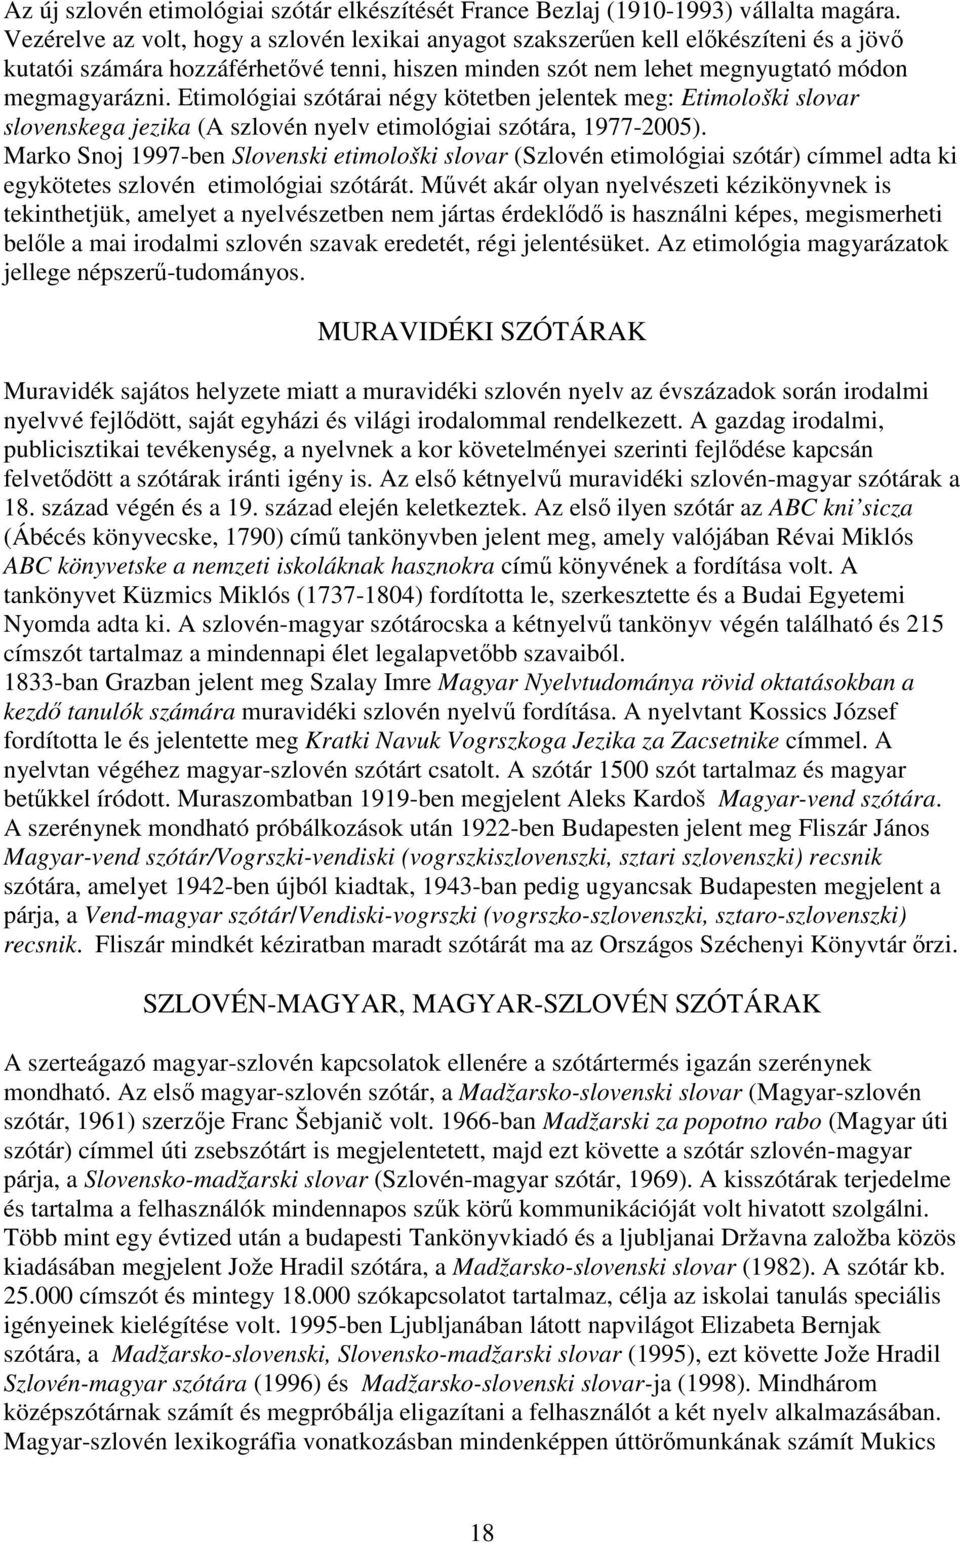 Etimológiai szótárai négy kötetben jelentek meg: Etimološki slovar slovenskega jezika (A szlovén nyelv etimológiai szótára, 1977-2005).